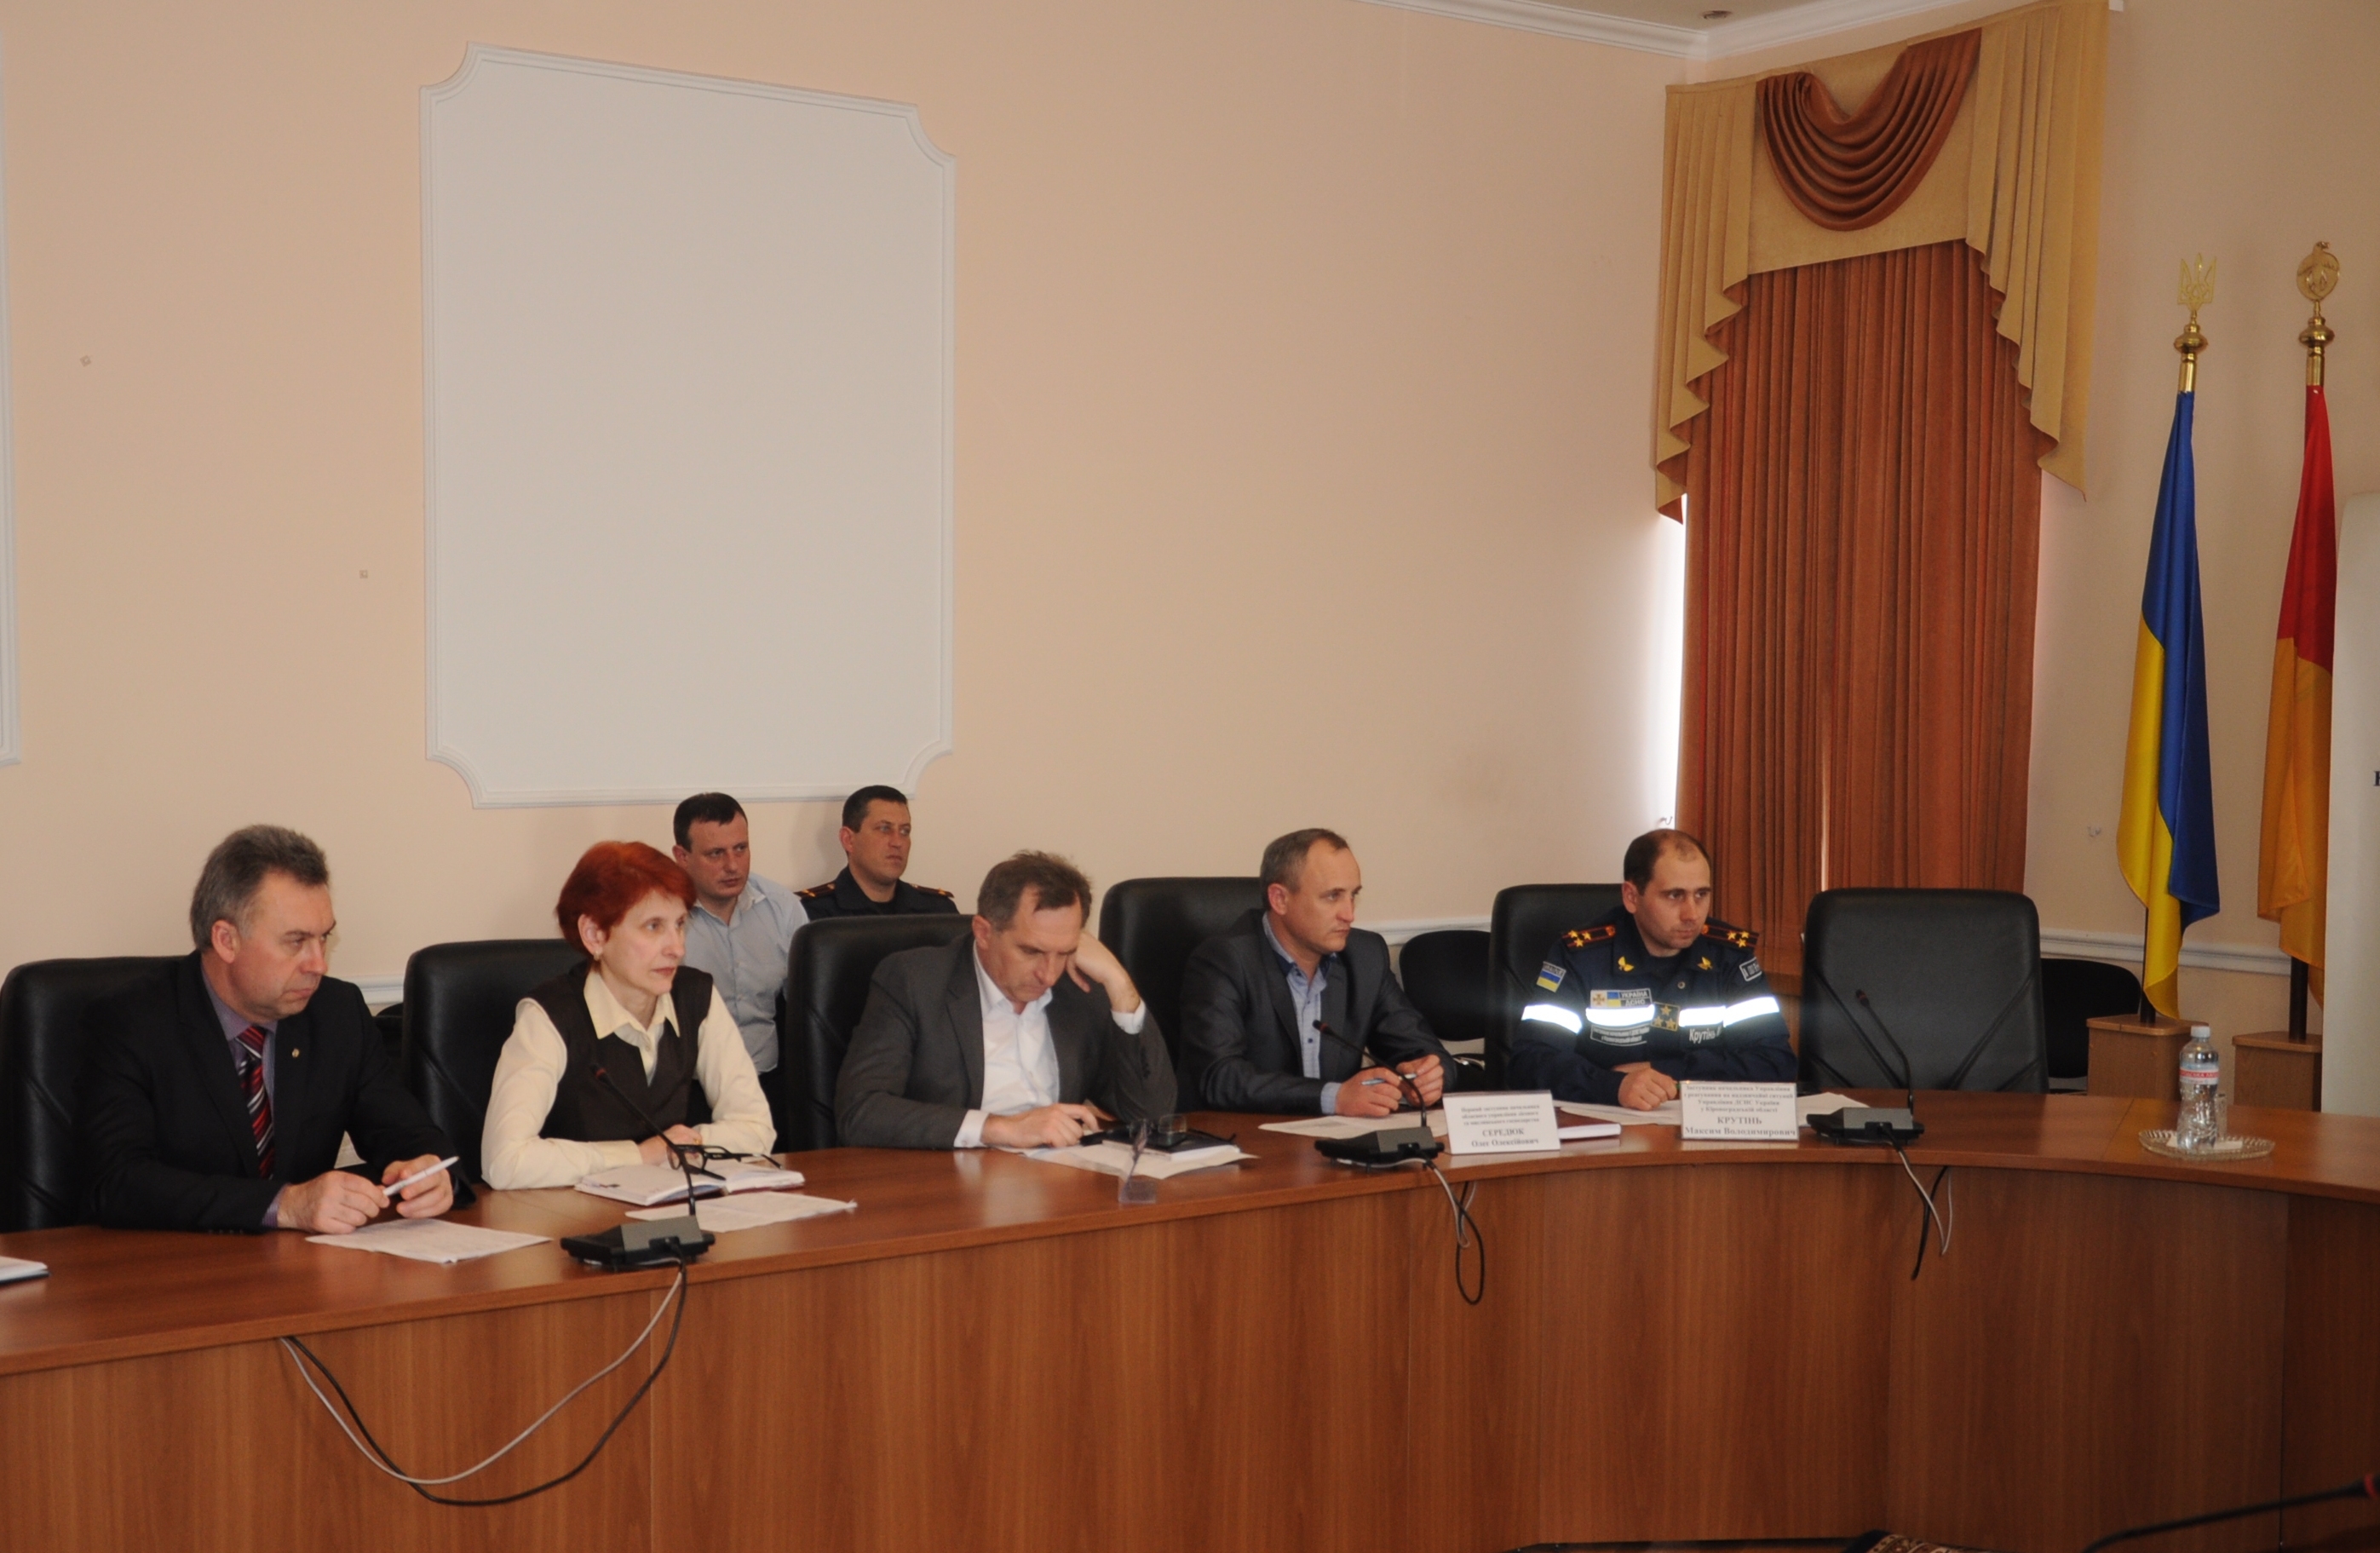 Безпека в екосистемах обговорювалася під час засідання обласної комісії з надзвичайних ситуацій